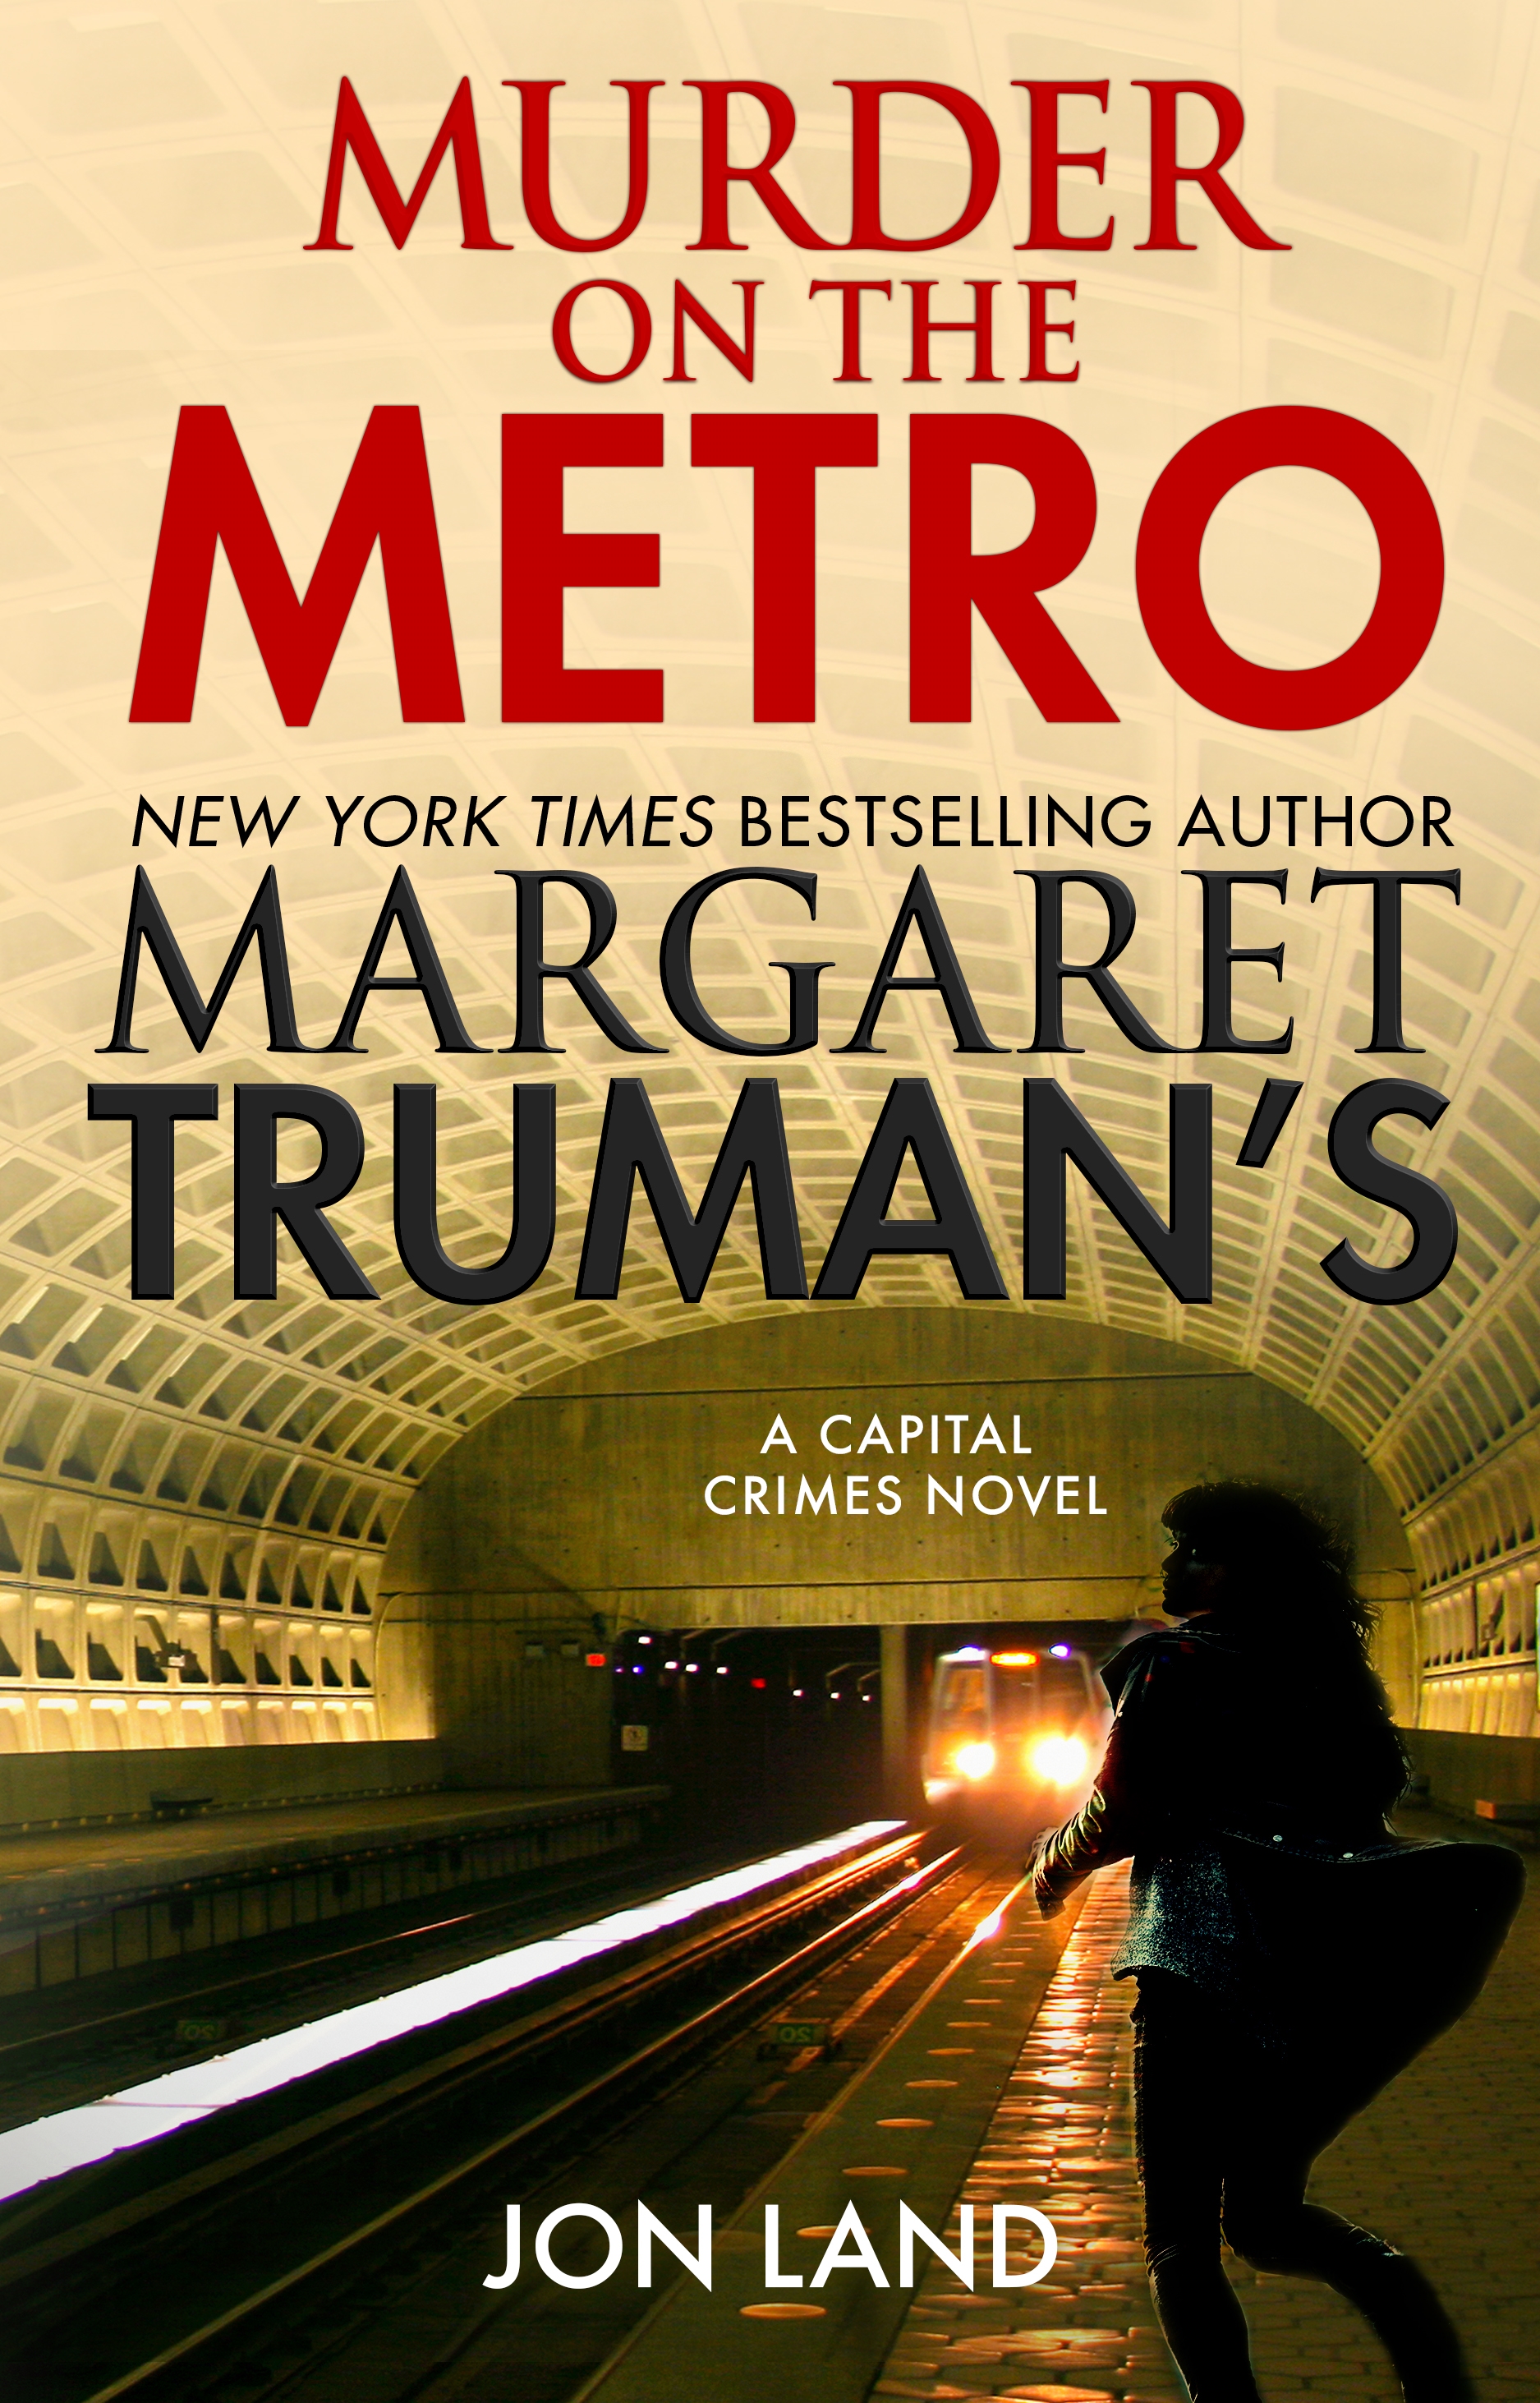 Margaret Truman's Murder on the Metro : A Capital Crimes Novel by Margaret Truman, Jon Land